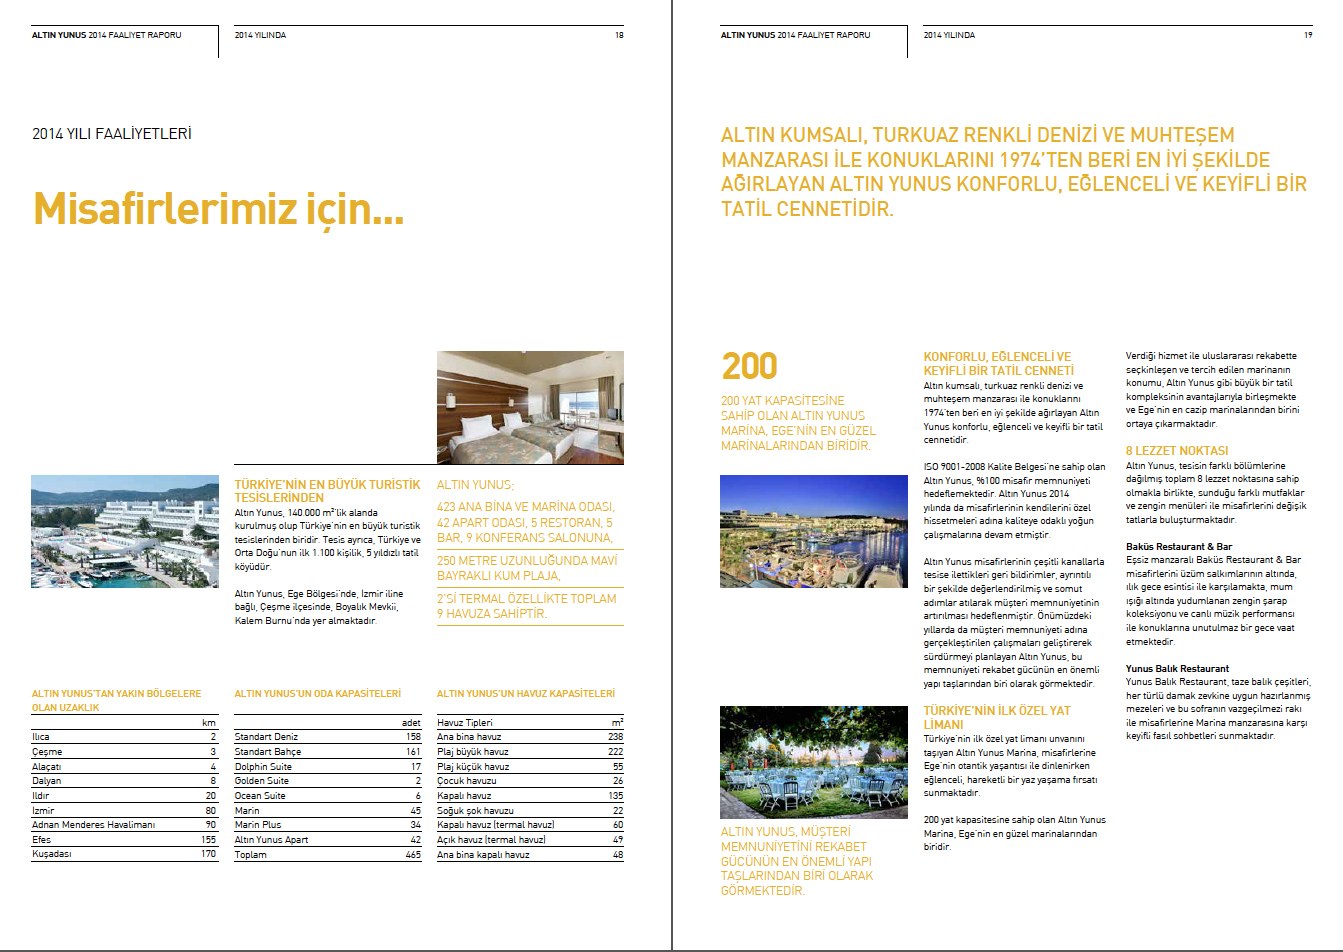 ALTIN YUNUS / 2014 Faaliyet Raporu / 2014 Annual Report